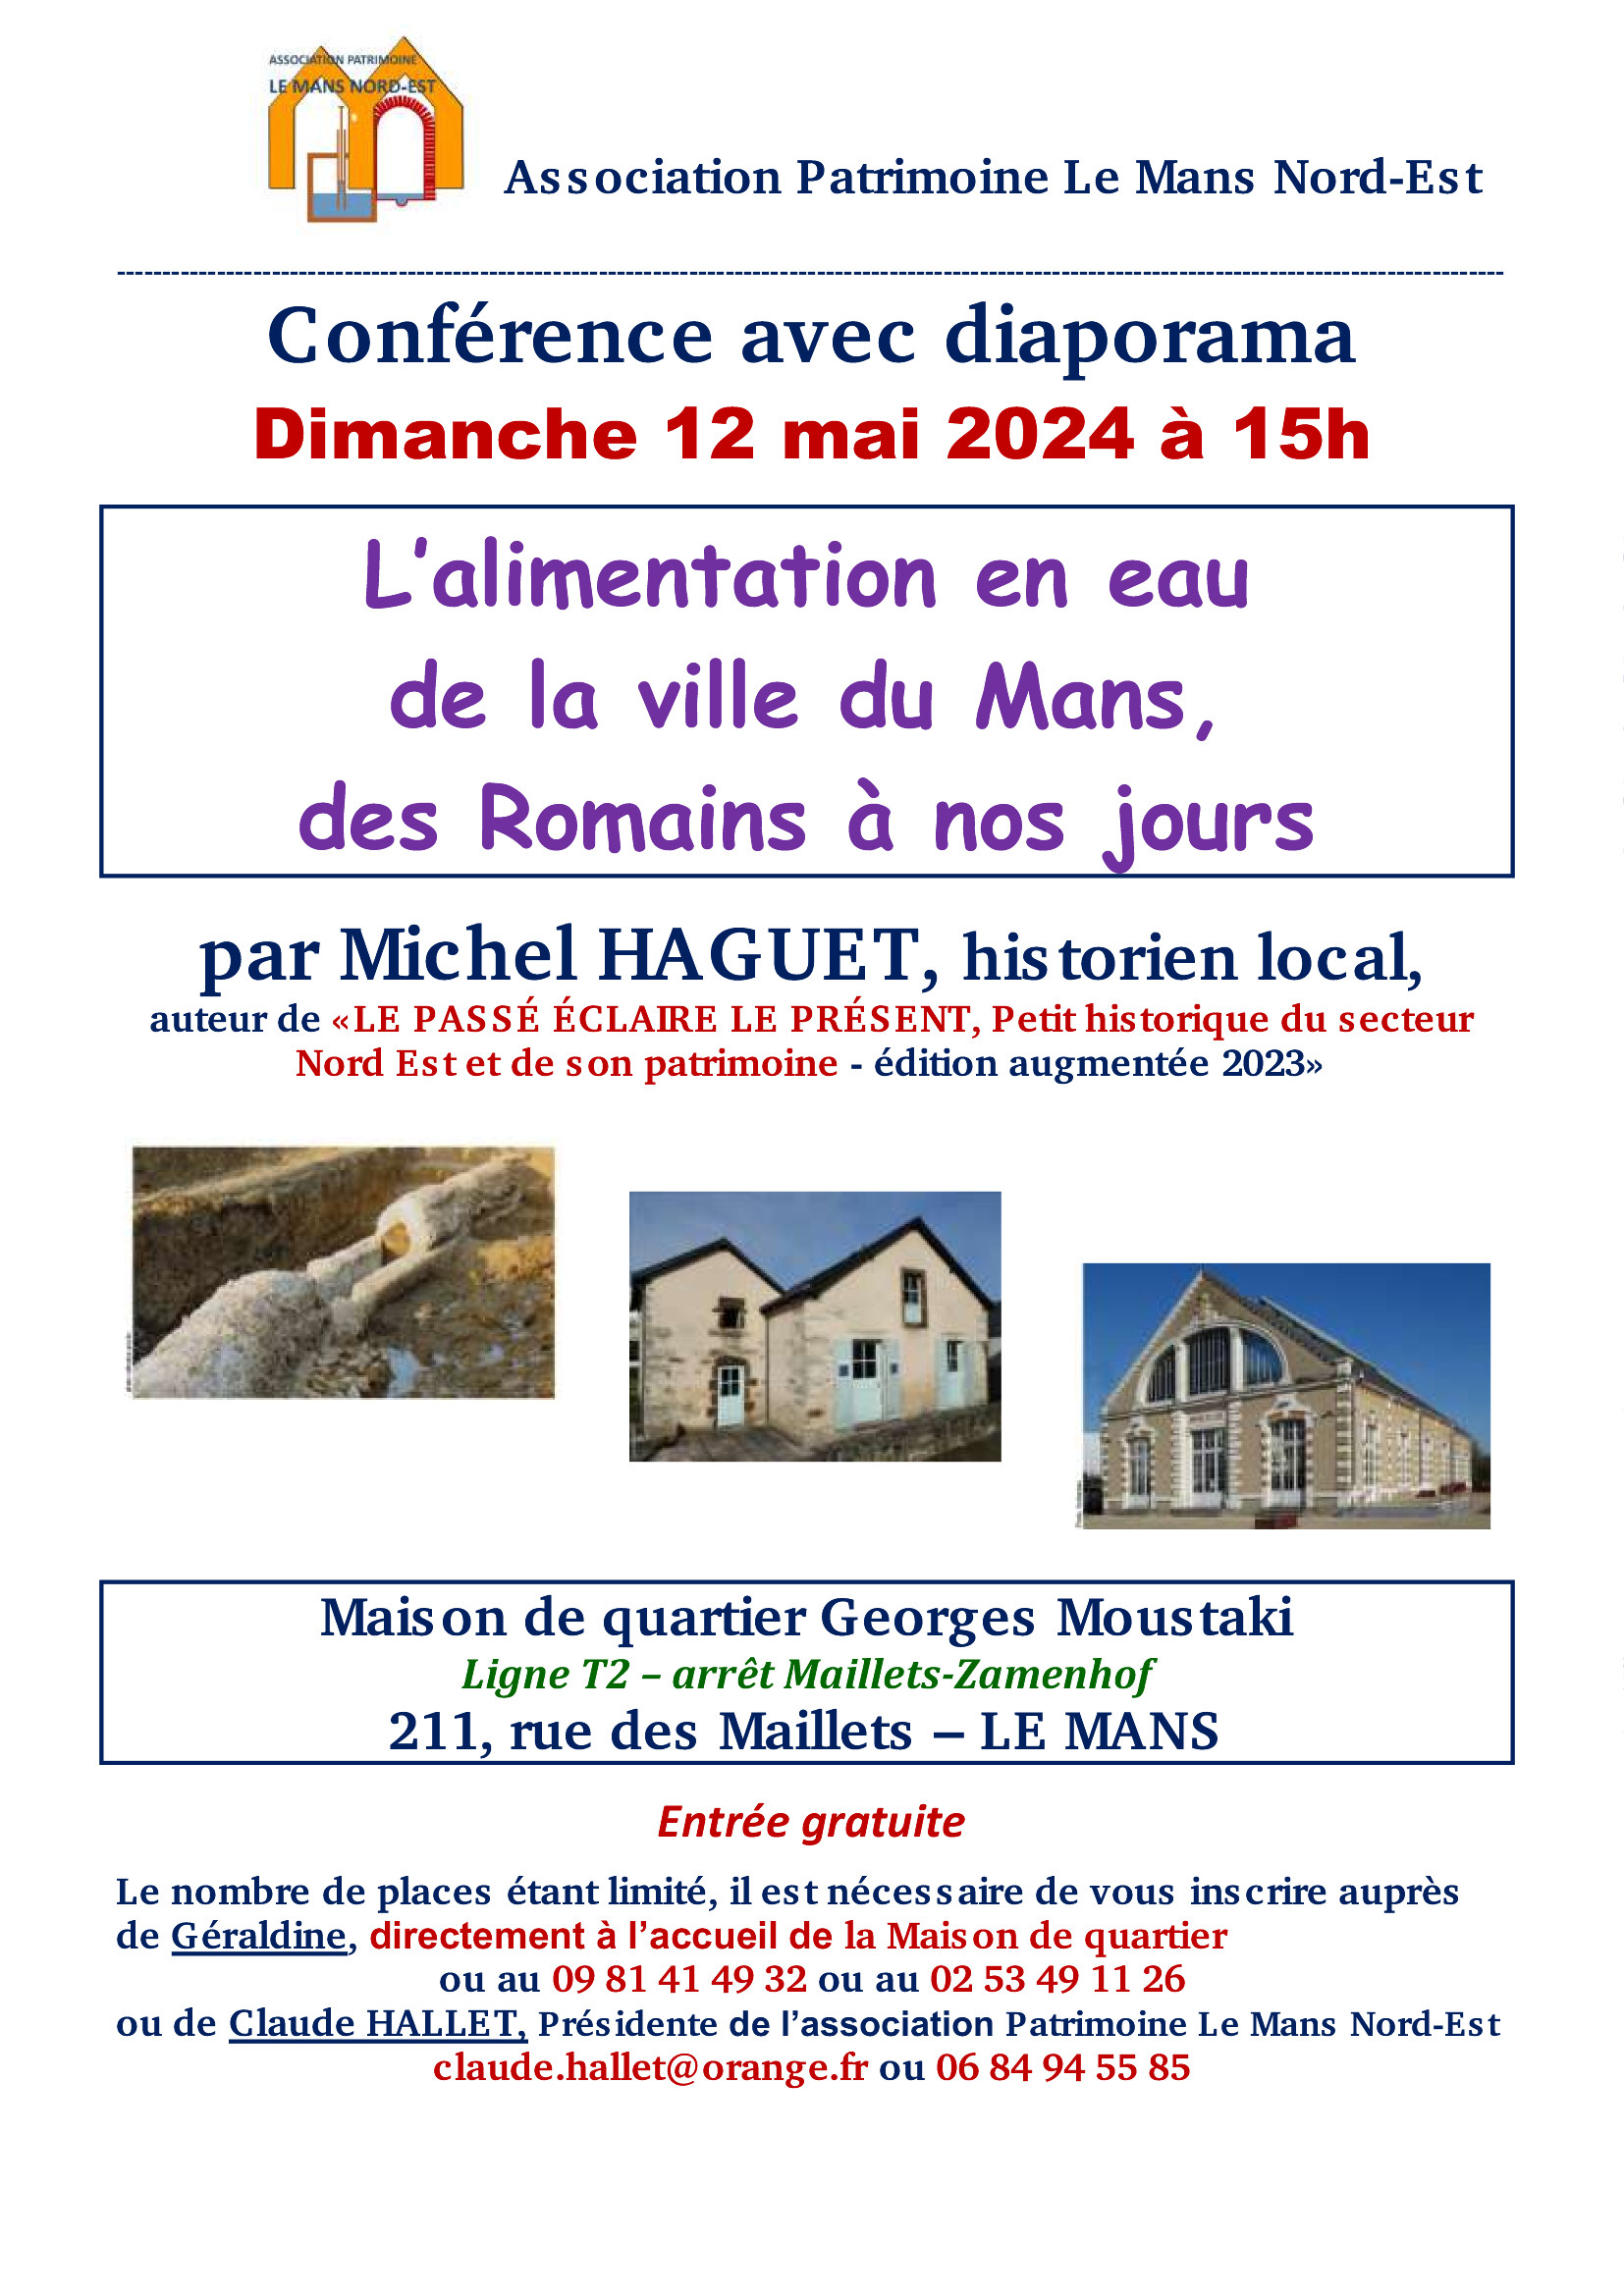 APLM Nord-Est - conference Michel HAGUET 12 mai 2024